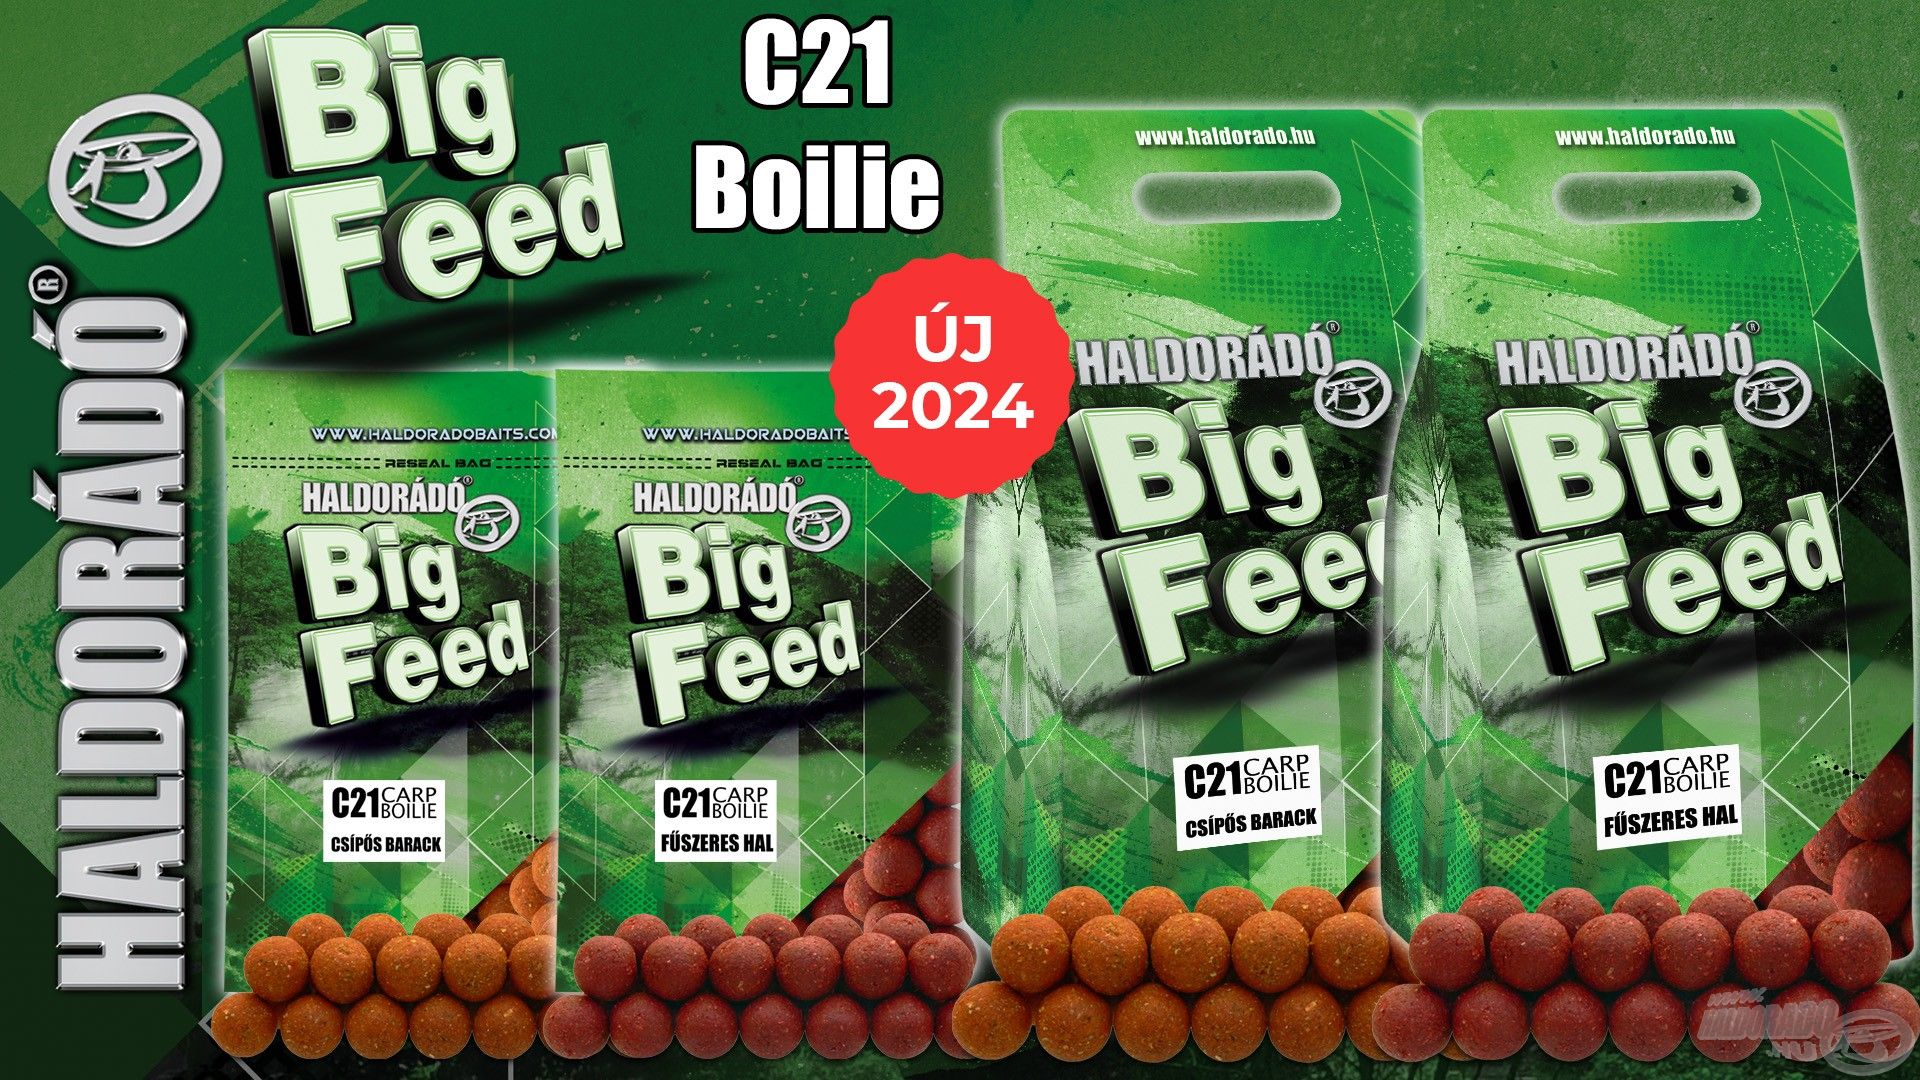 Természetesen a C21 bojlik is elérhetők ezekben az ízesítésekben, illetve kiszerelésekben